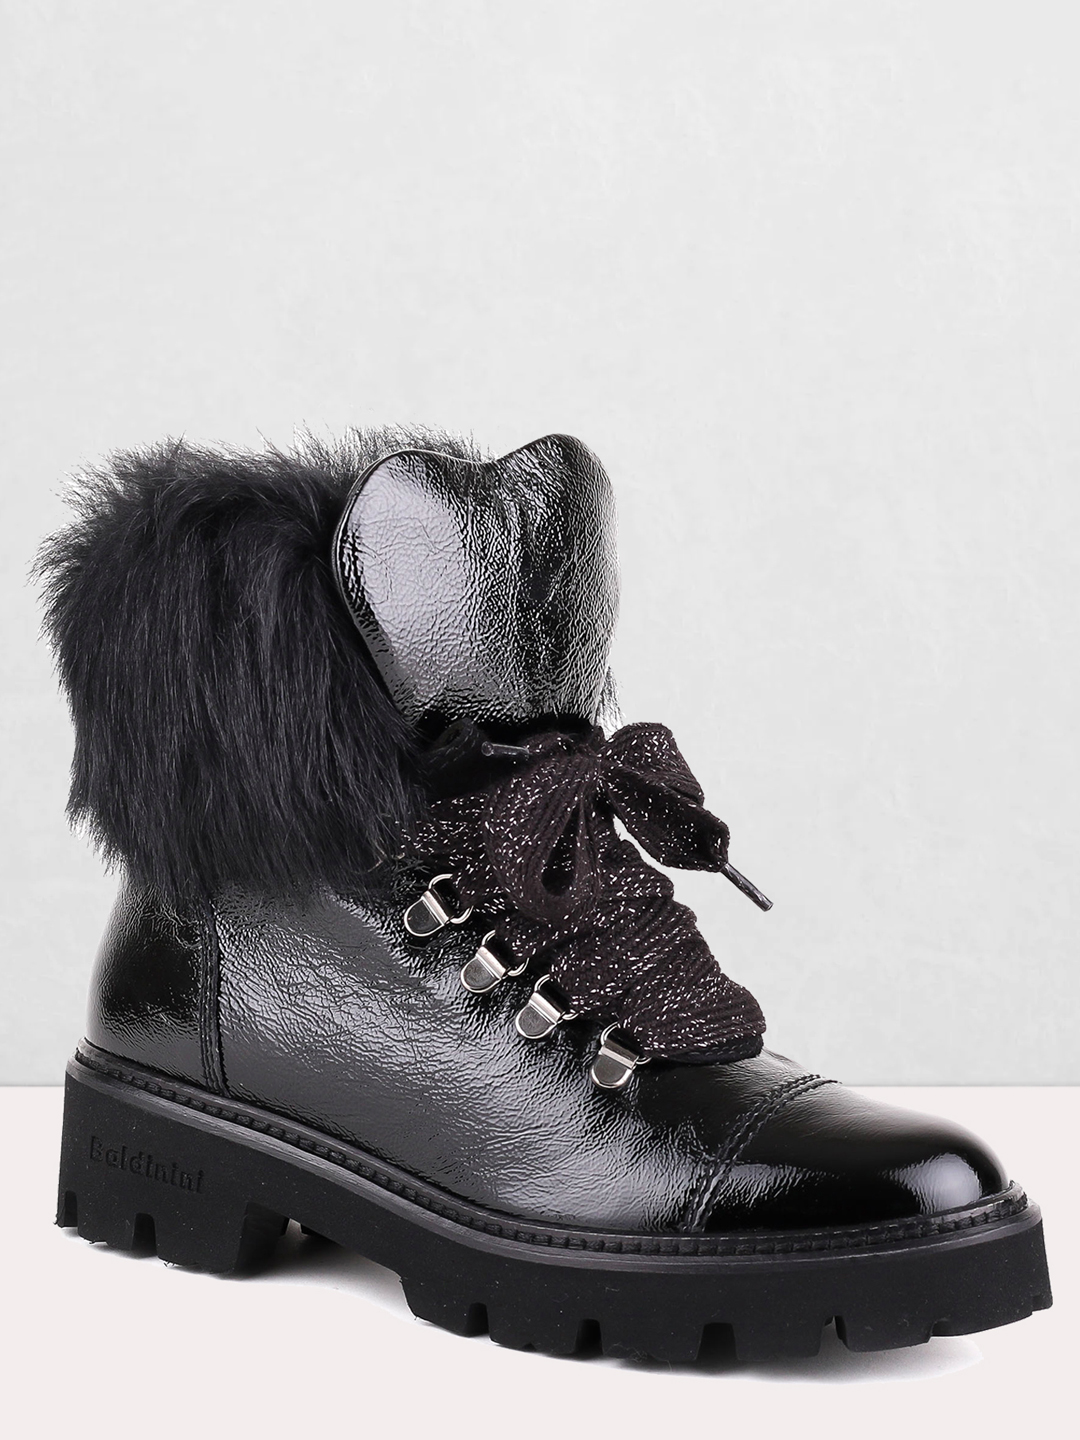 Ботинки Baldinini T0380 black – Италия, черного цвета, натуральная кожа.  Купить в интернет-магазине в Екатеринбурге. Цена 25640 руб.